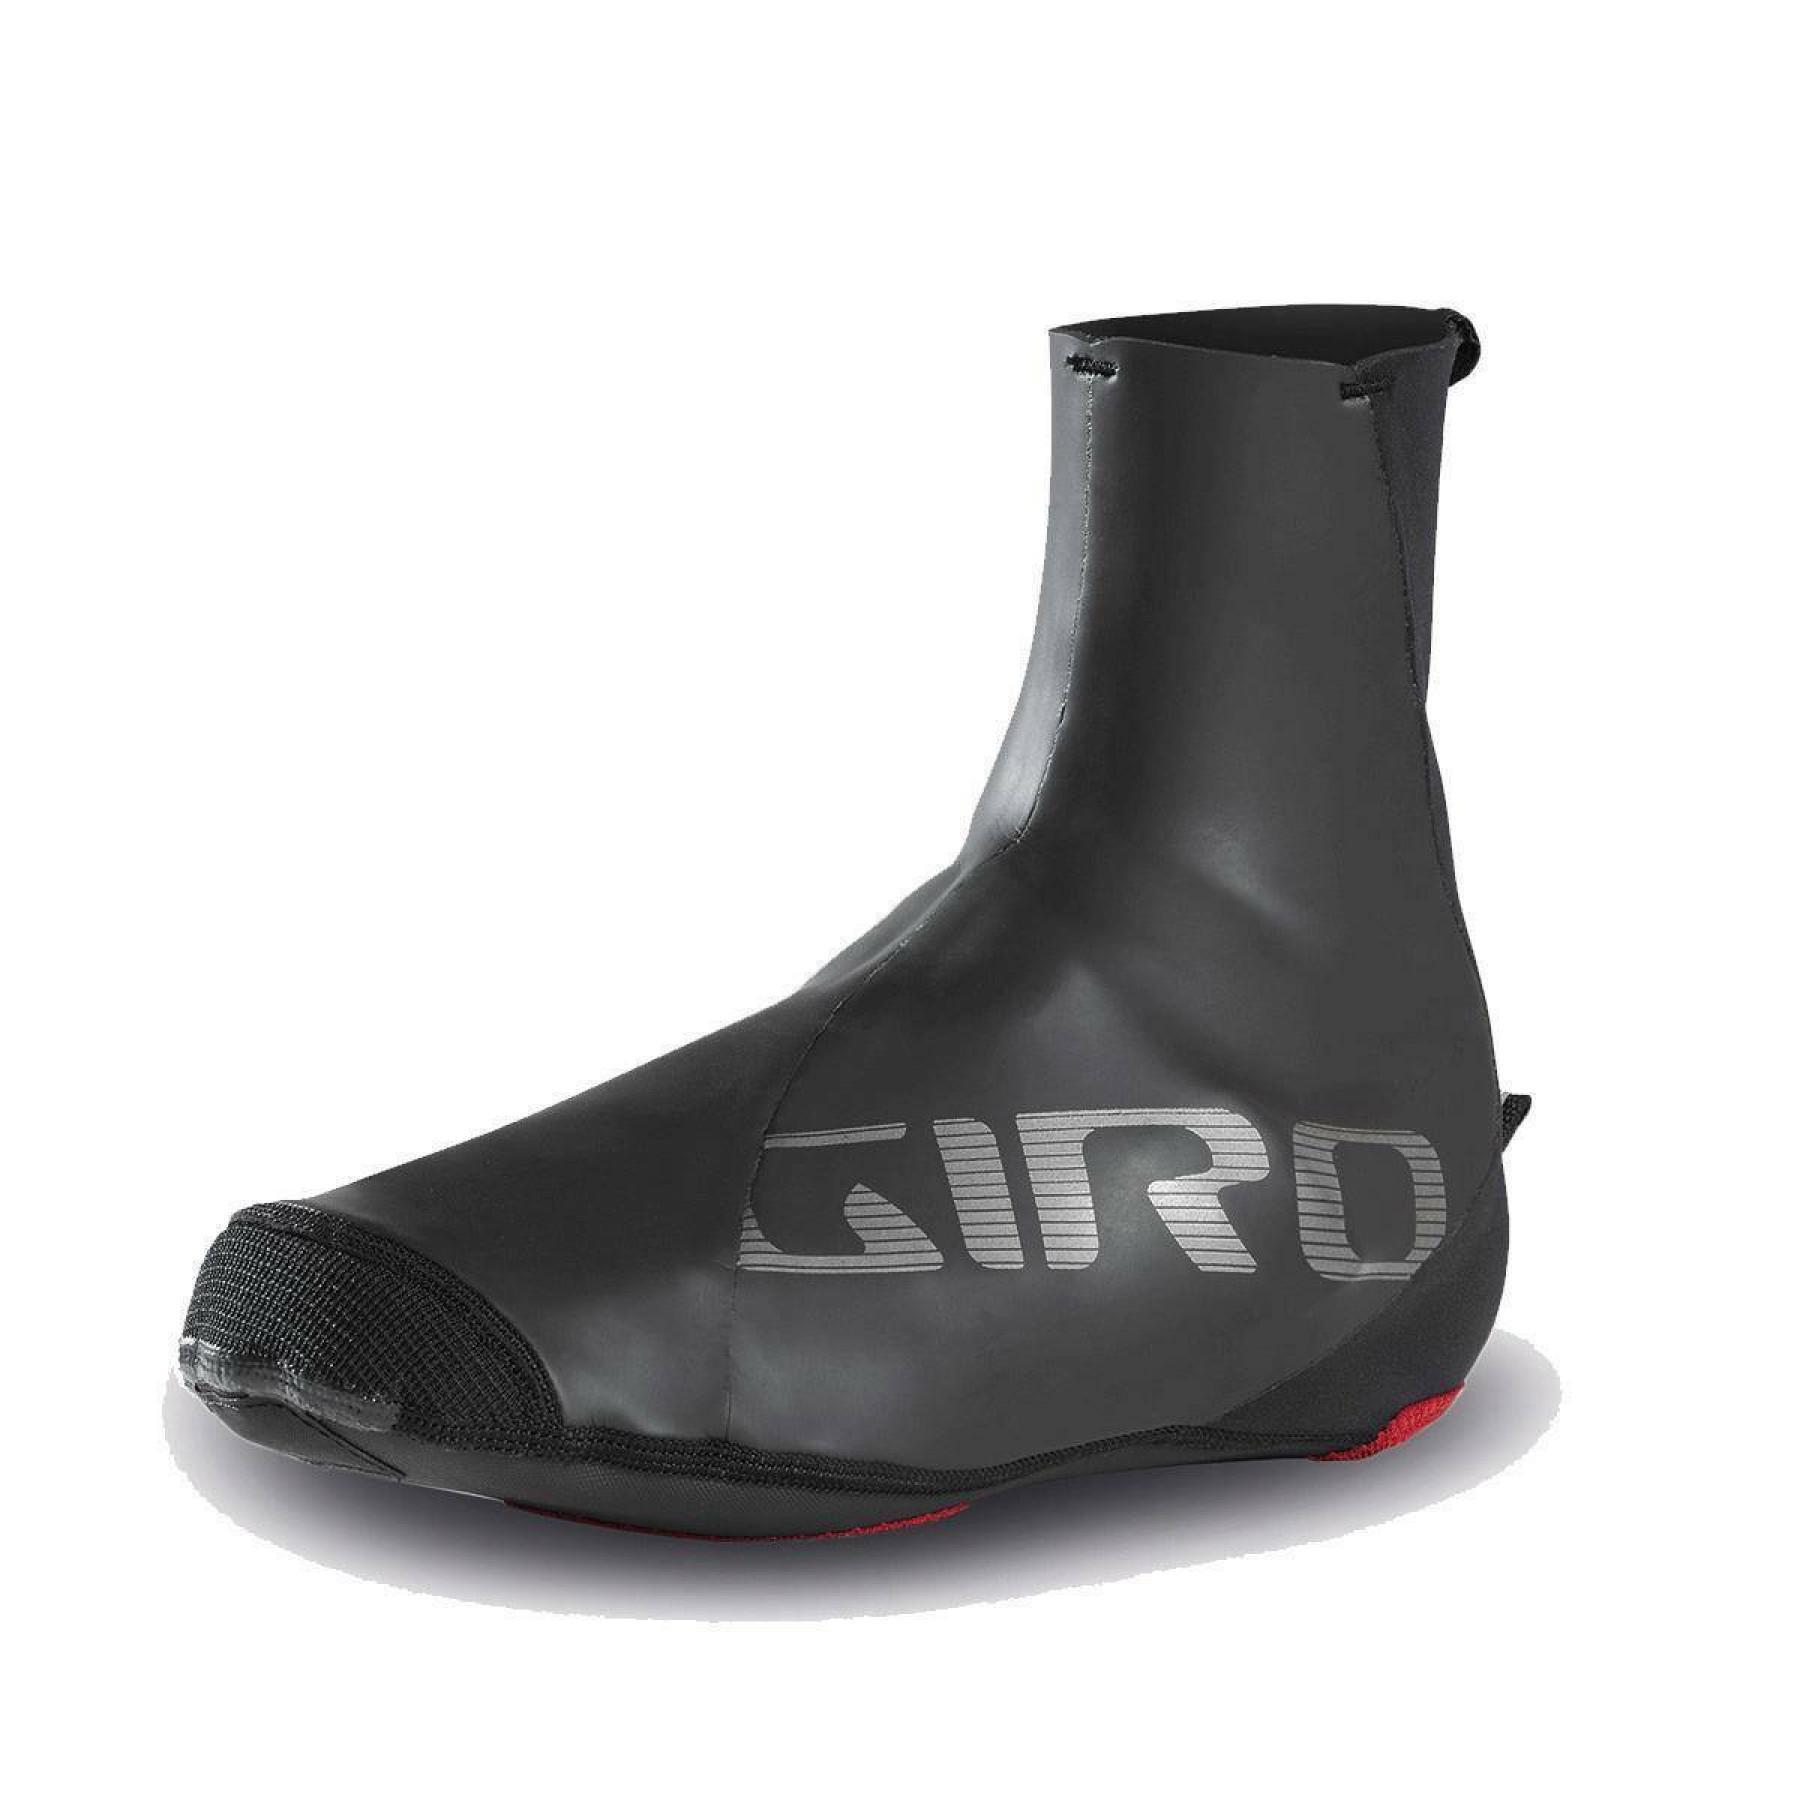 Copriscarpe Giro Proof Winter Shoe Cover